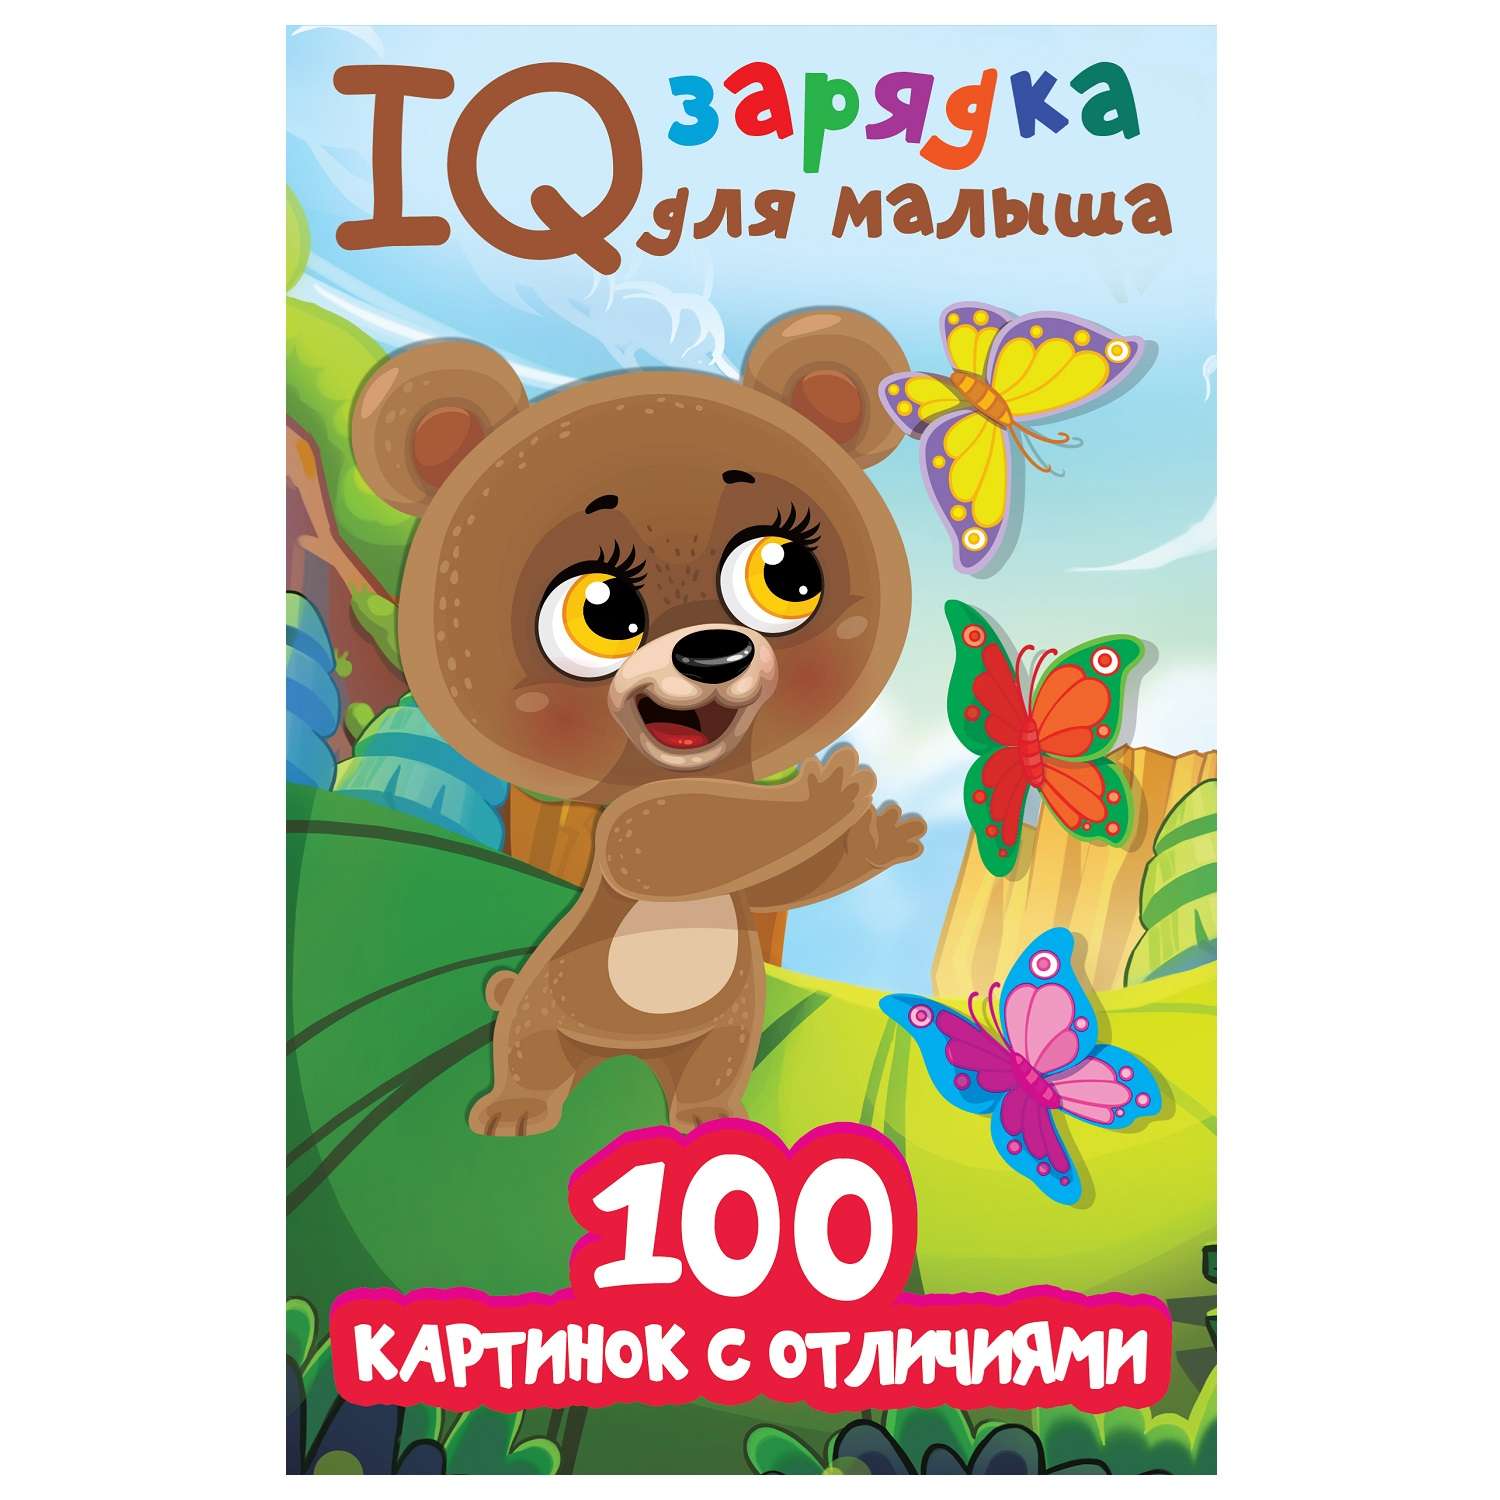 Книга АСТ IQ зарядка для малыша 100 картинок с отличиями - фото 1